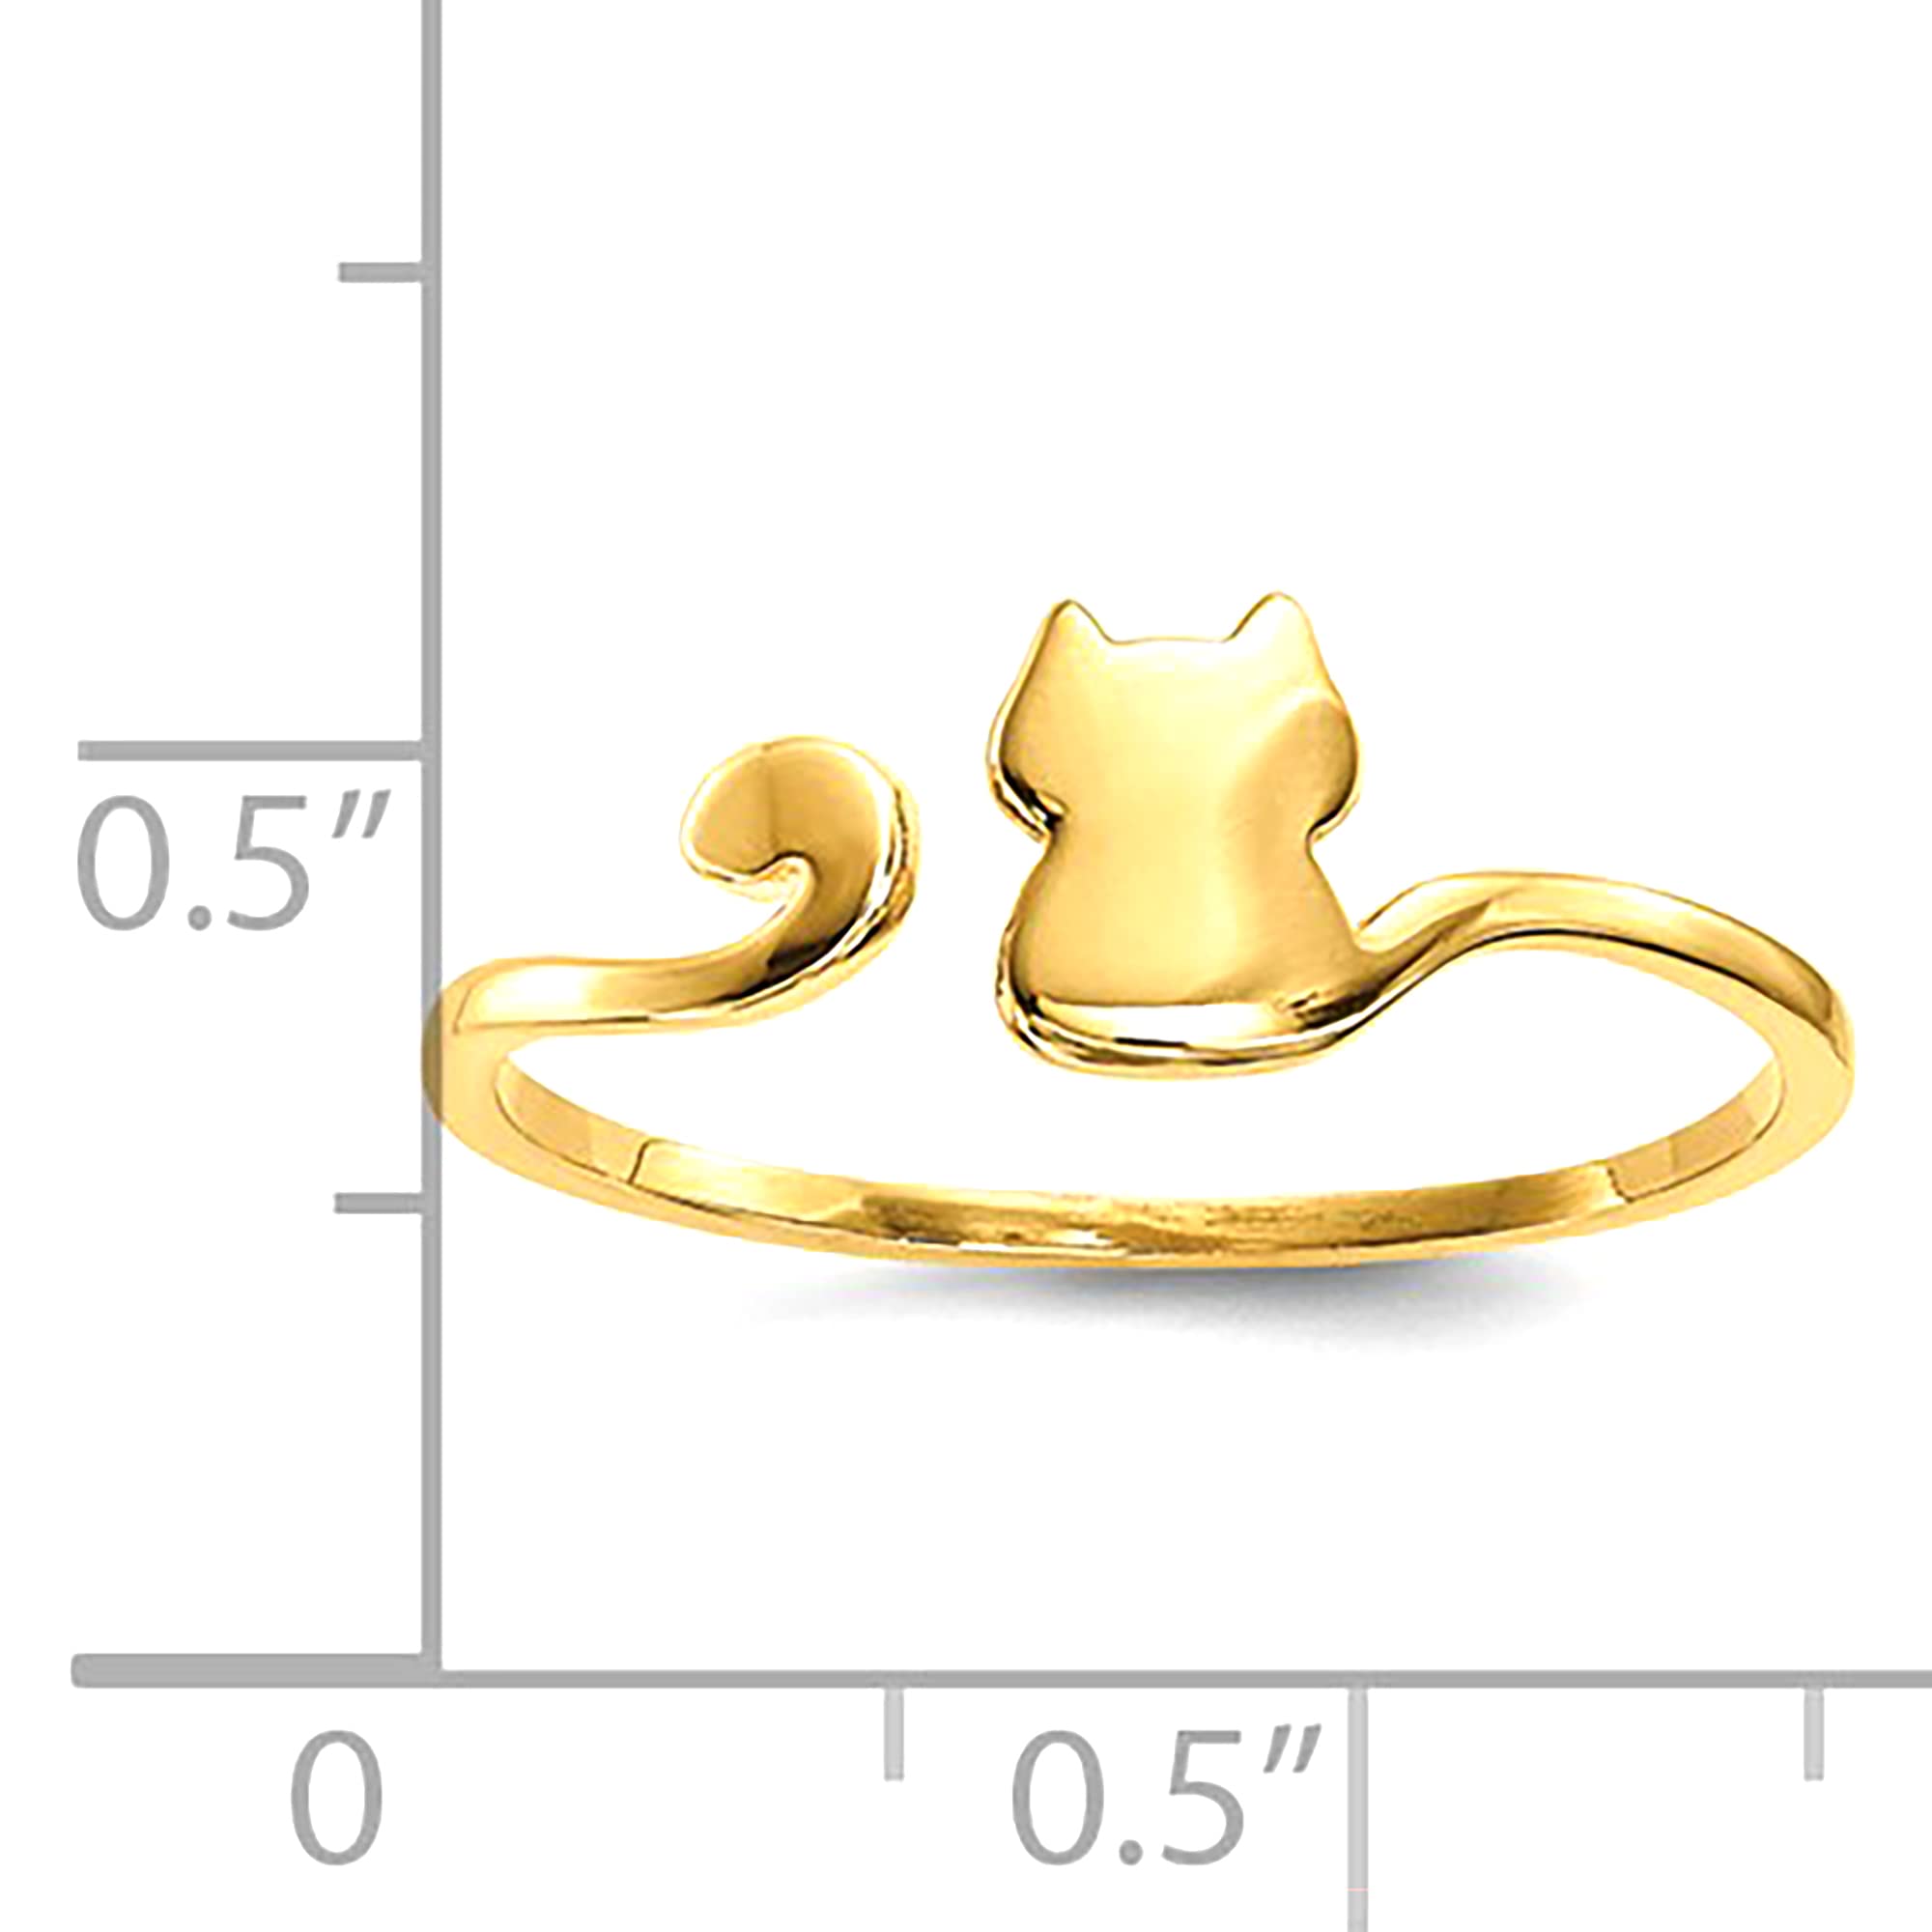 Anello per polsino regolabile con design a gatto lucido in oro giallo 14k, gioielli di design per uomini e donne